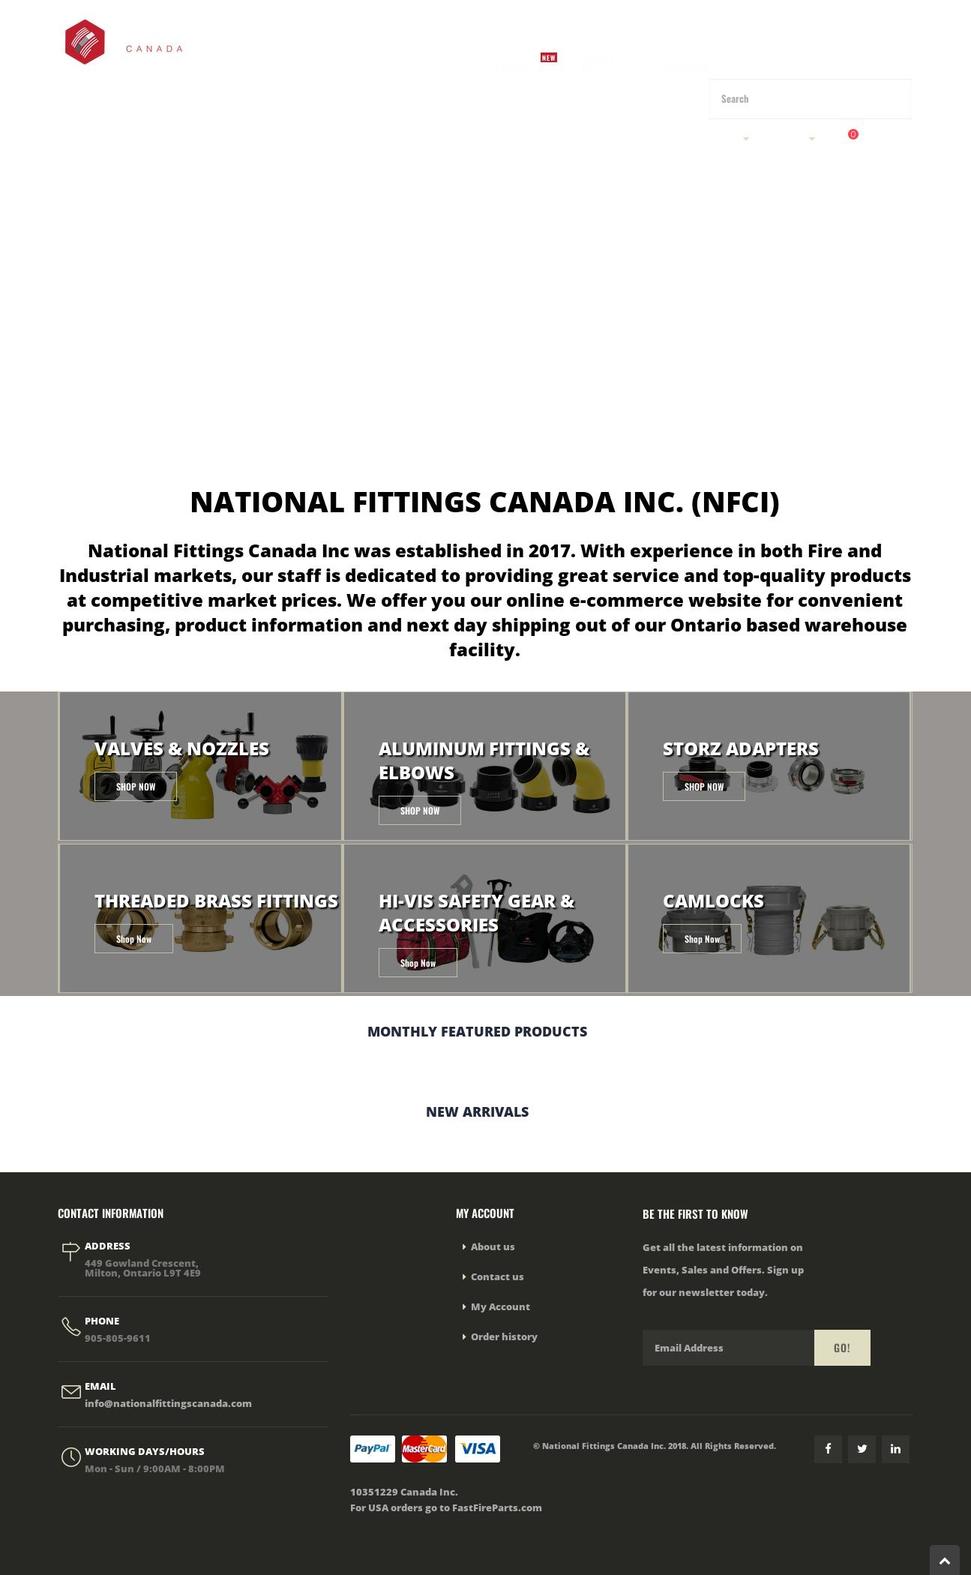 nationalfittingscanada.com shopify website screenshot